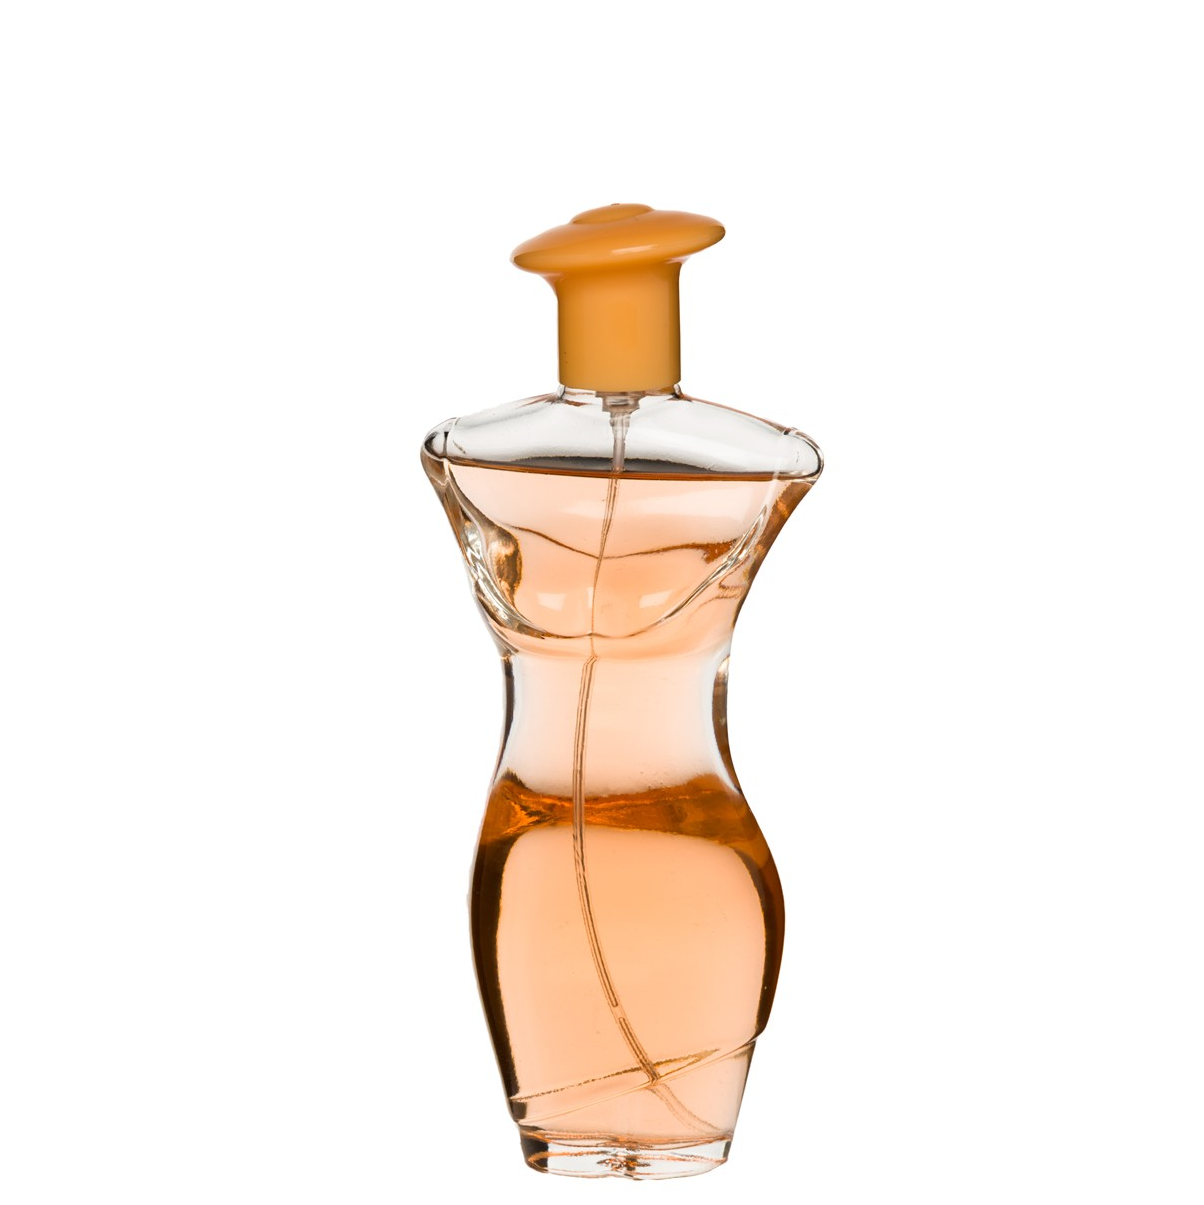 100 ml Eau de Perfume "AMOUR FATALE" Itämainen kukkaistuoksu naisille, korkea 2%:n hajusteöljypitoisuus